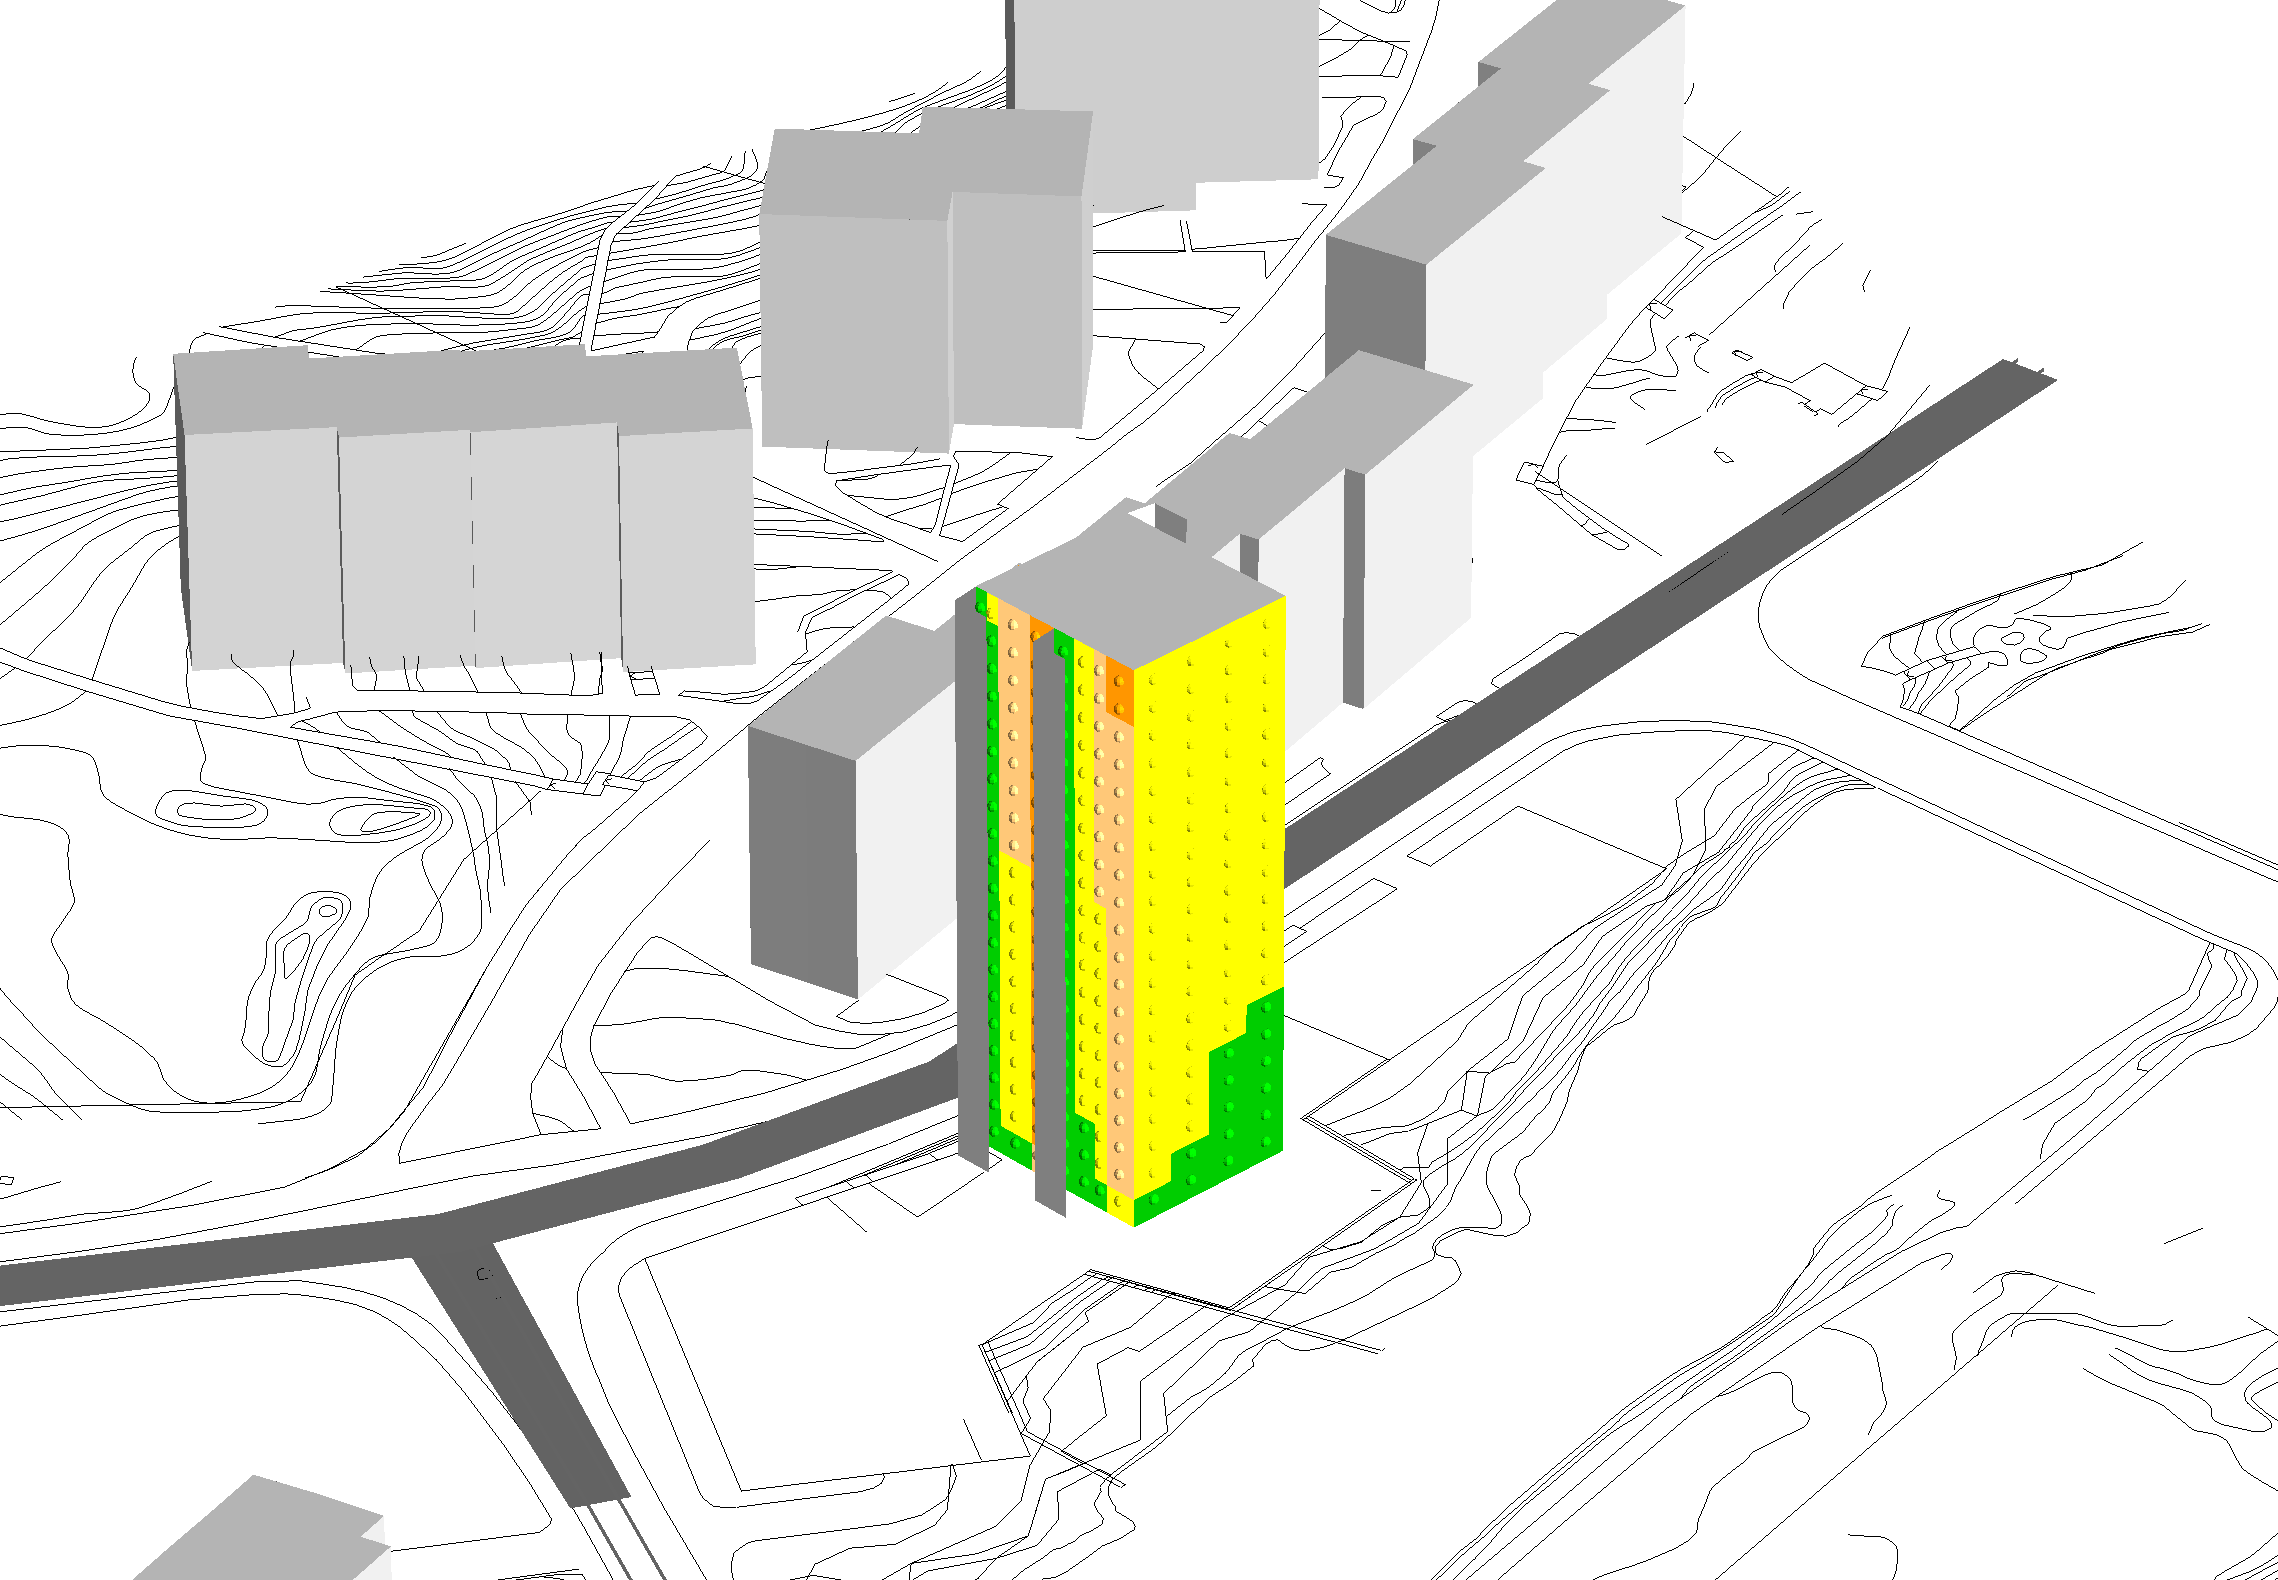 Kv. Nejlikan, Borås Etapp 1, endast höghus 20 våningar Dygnsekvivalent ljudnivå vid fasad